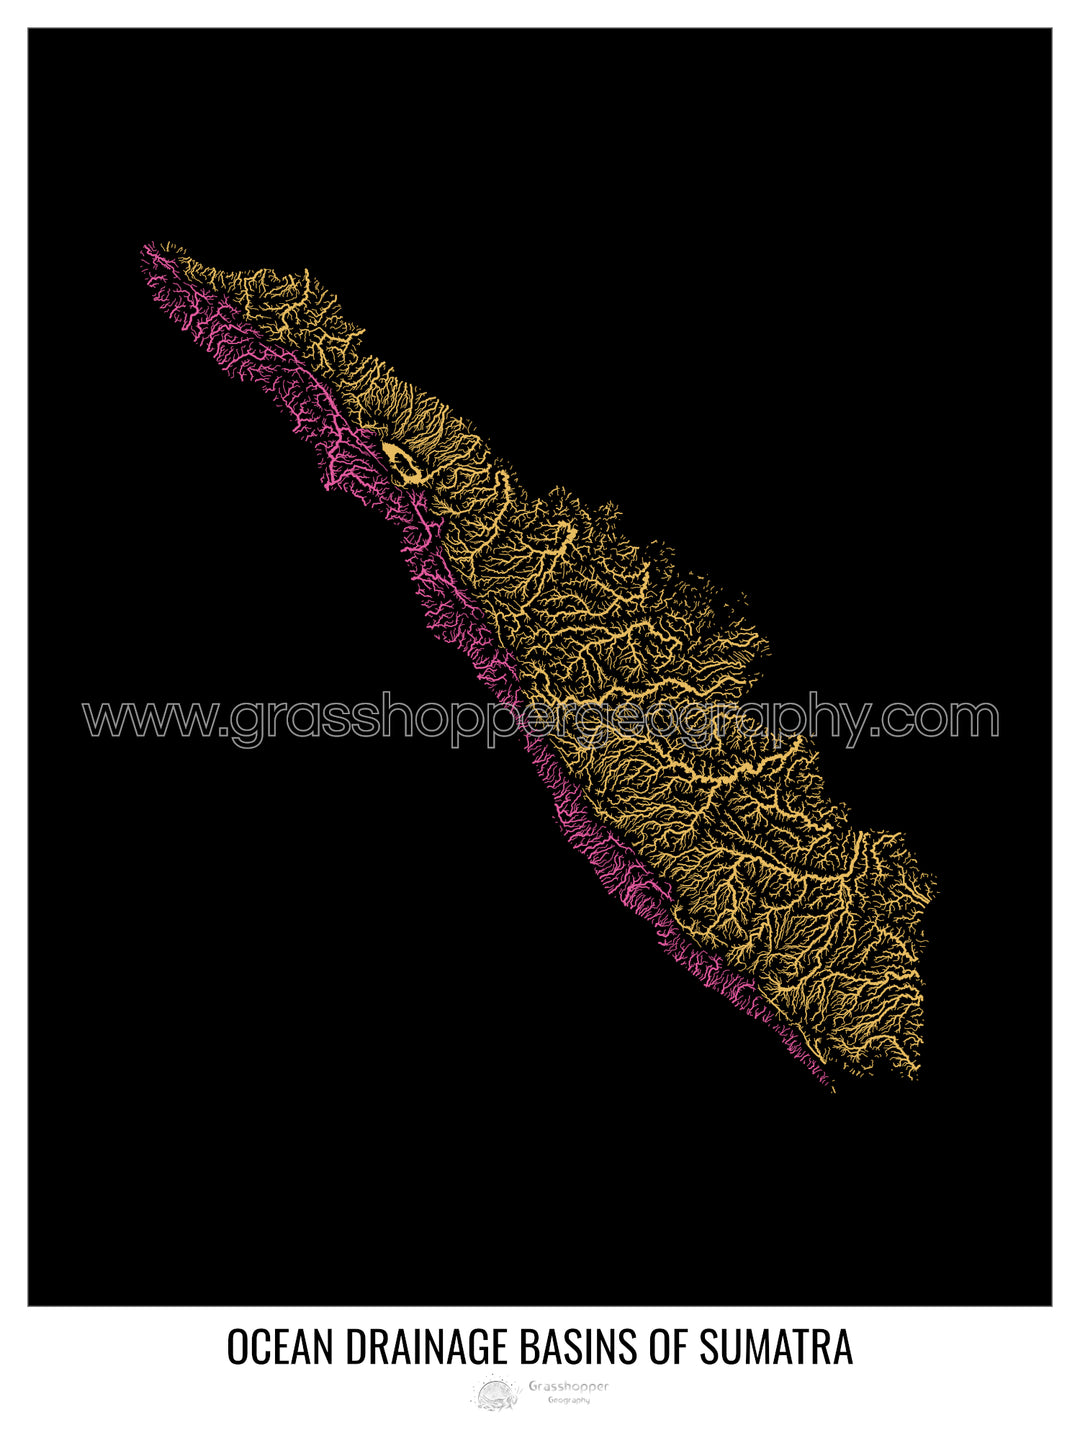 Sumatra - Carte du bassin versant océanique, noir v1 - Tirage photo artistique